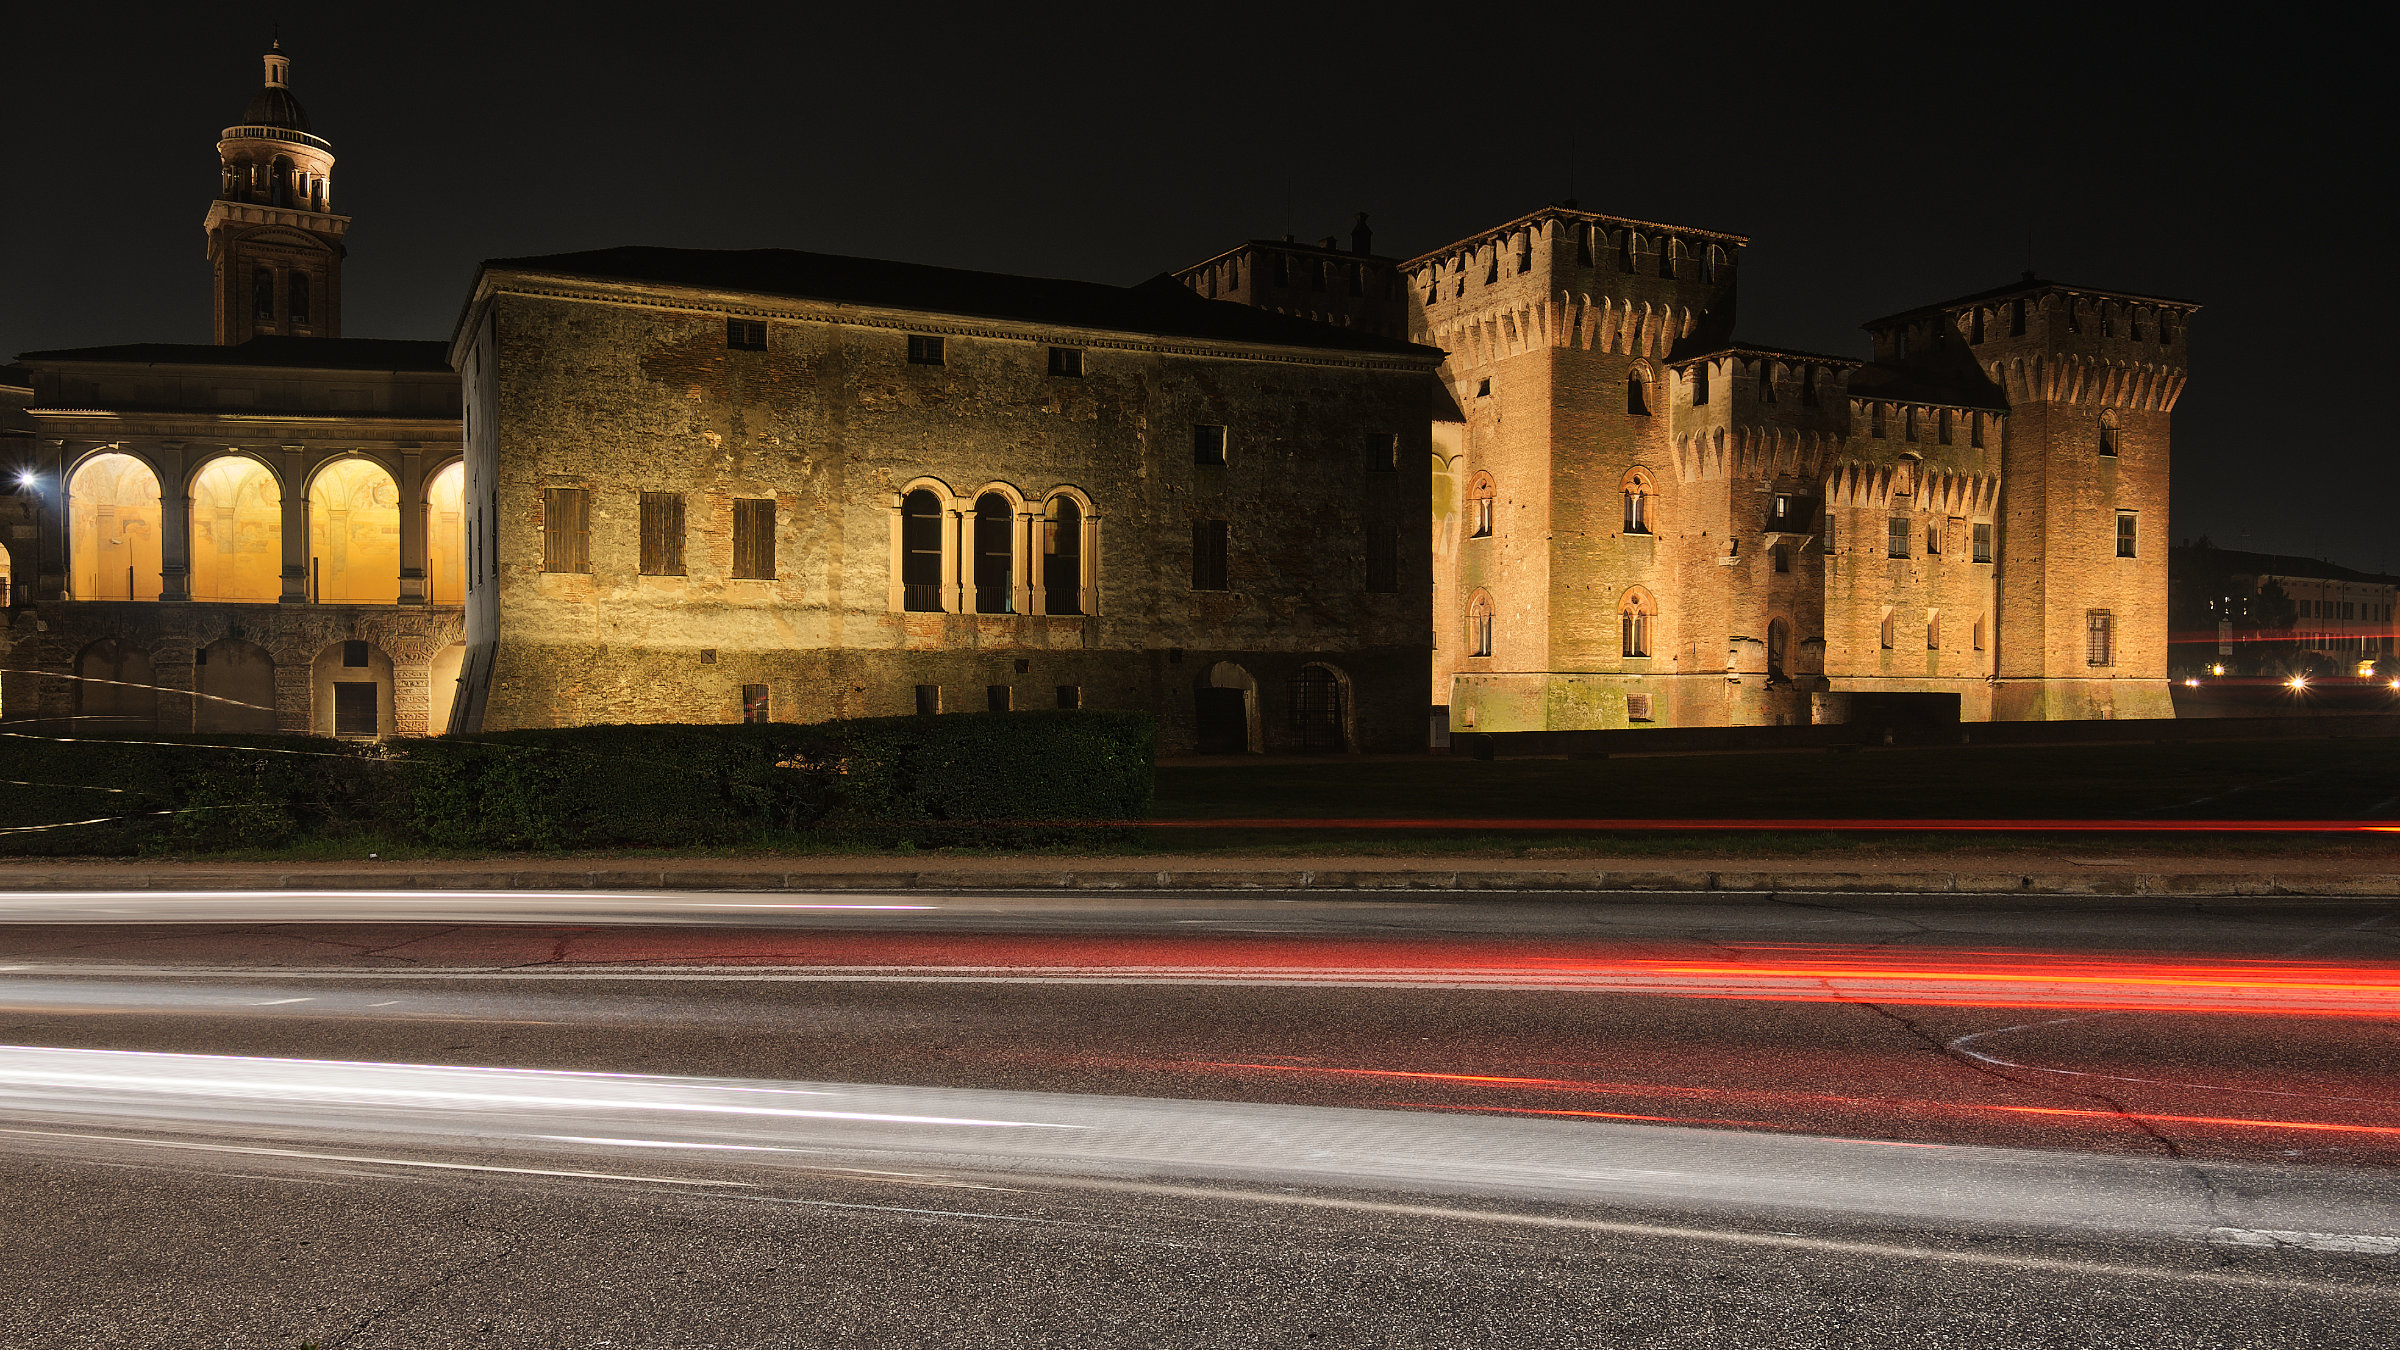 Castello di San Giorgio - Mantova #1...